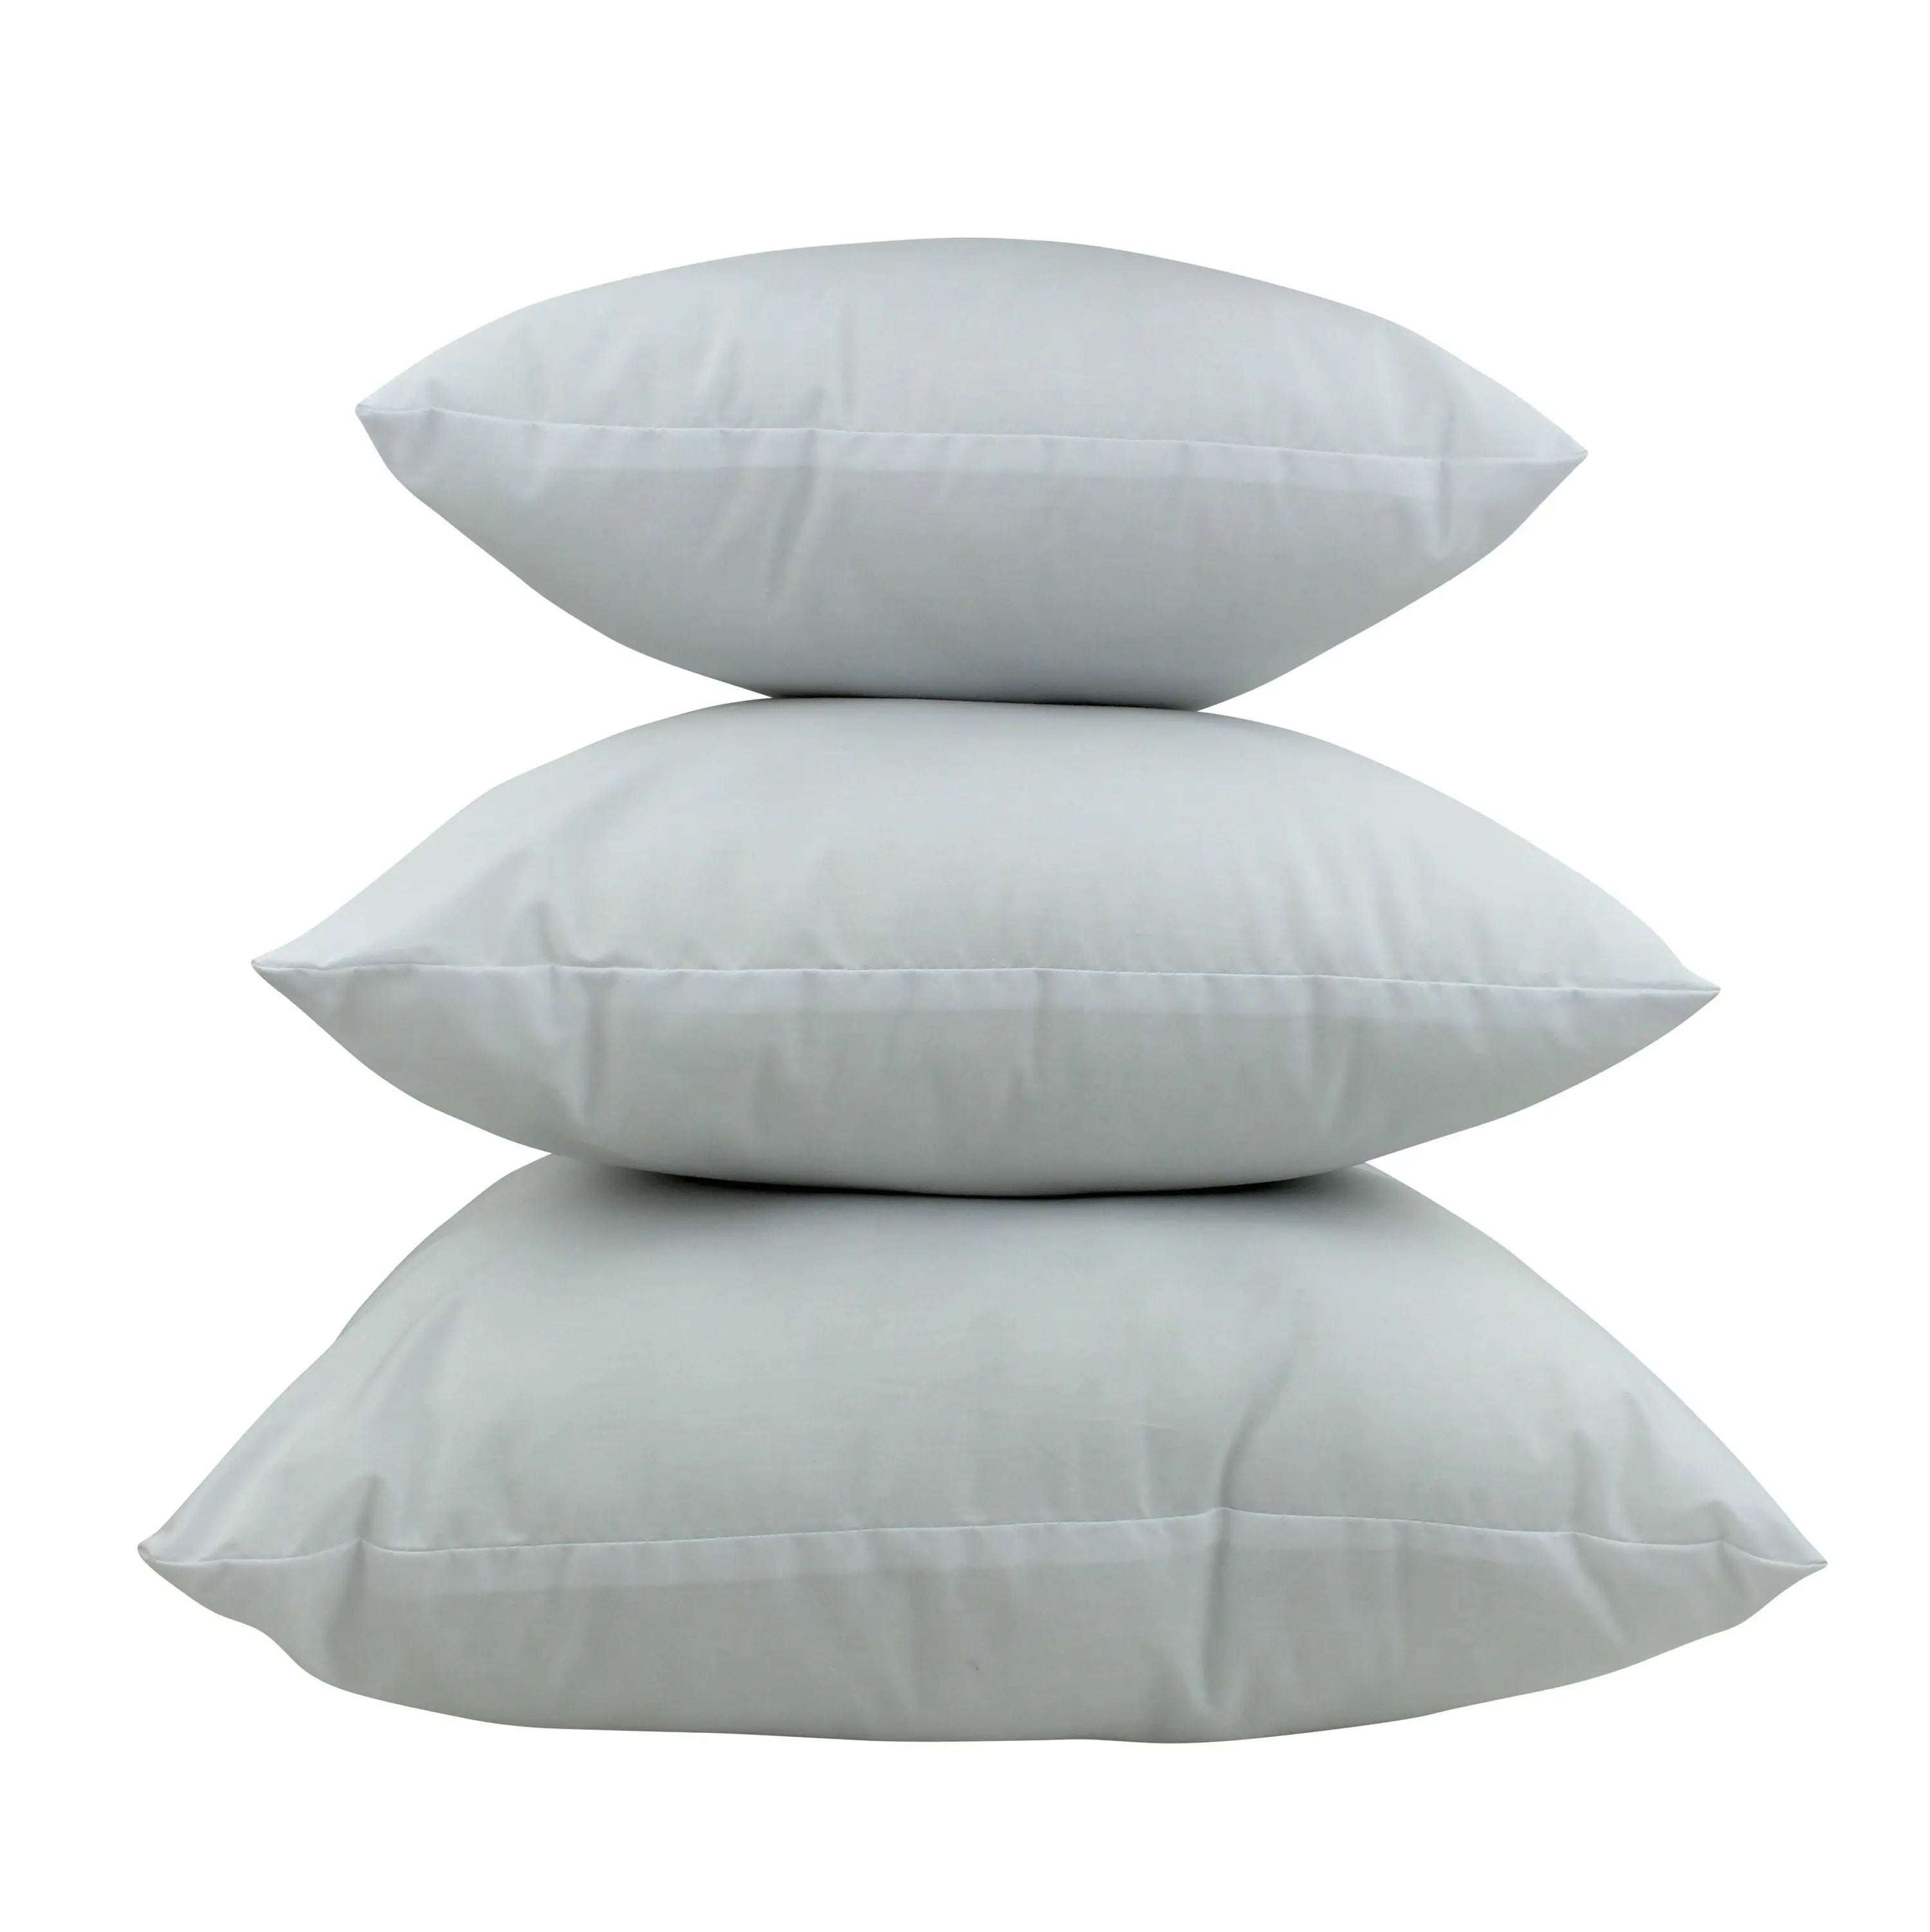 Hypoallergenic Down-Alternative Rectangular Modern Throw Pillow Inserts